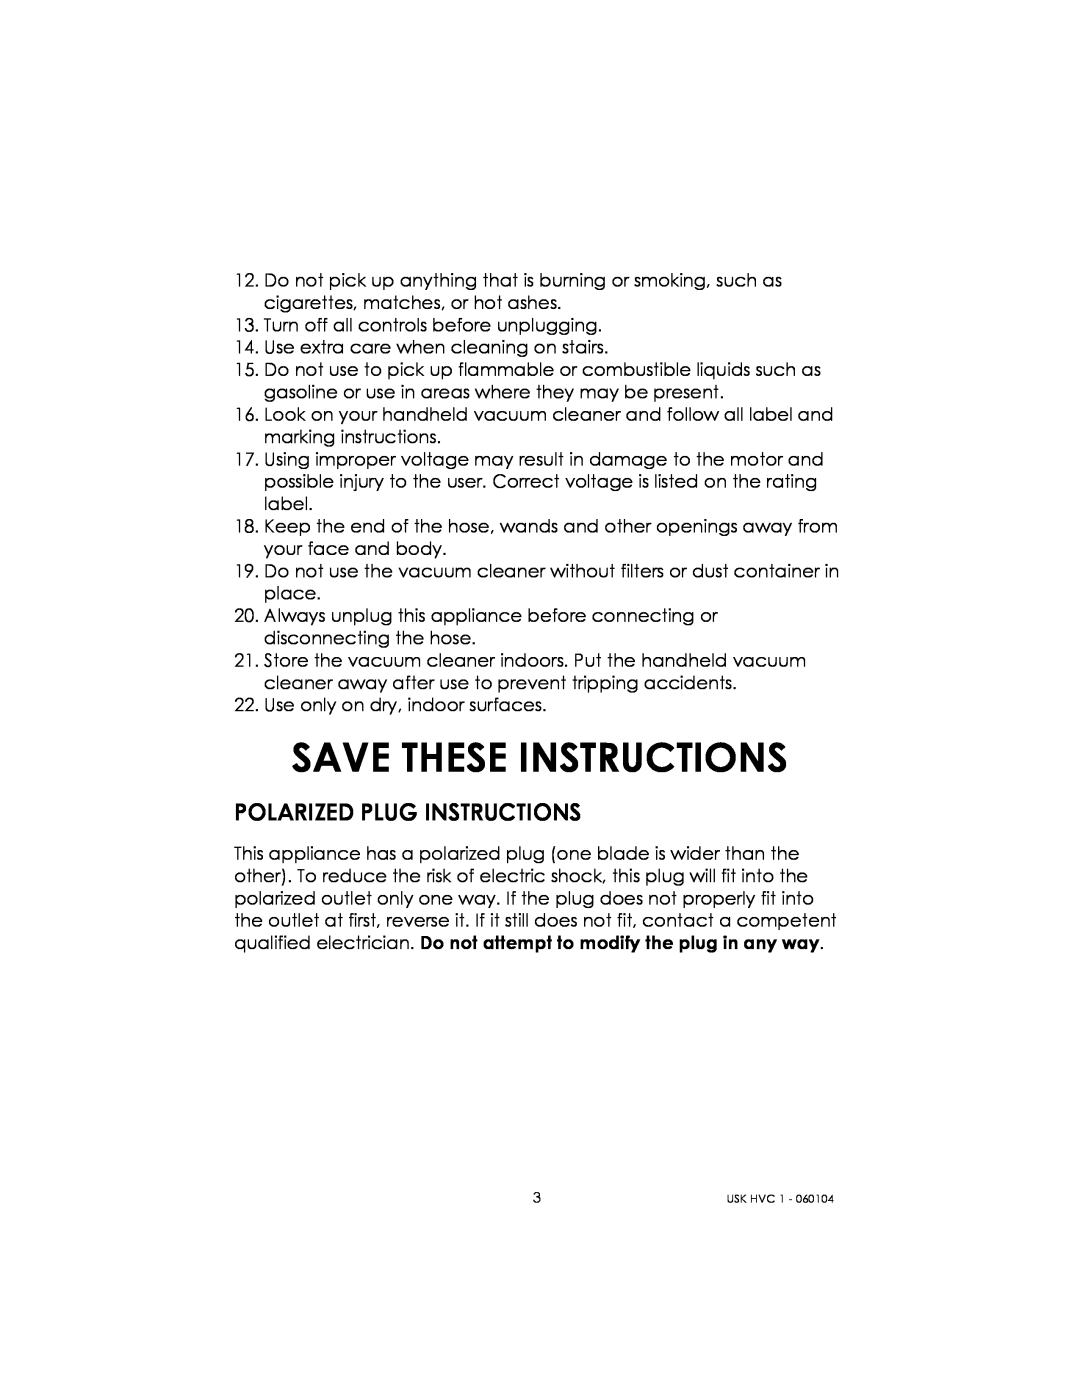 Kalorik USK HVC 1 - 060104 manual Save These Instructions, Polarized Plug Instructions 